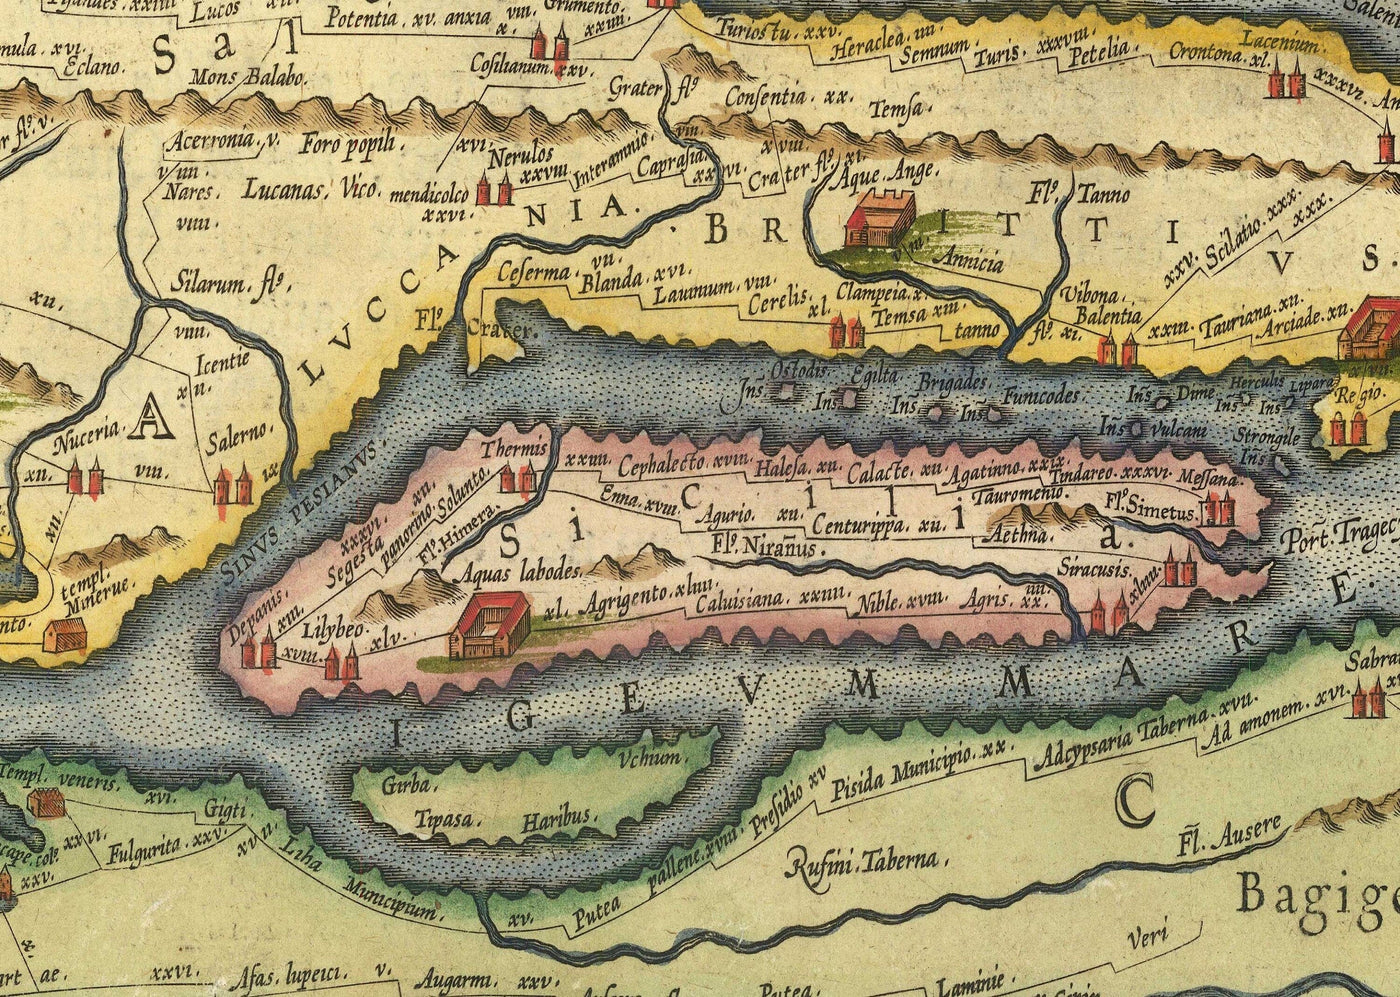 Alte Karte der Straßen des Römischen Reiches, 1624 von Ortelius & Peutinger - Cursus Publicus, Rom, Europa, Caesar Augustus